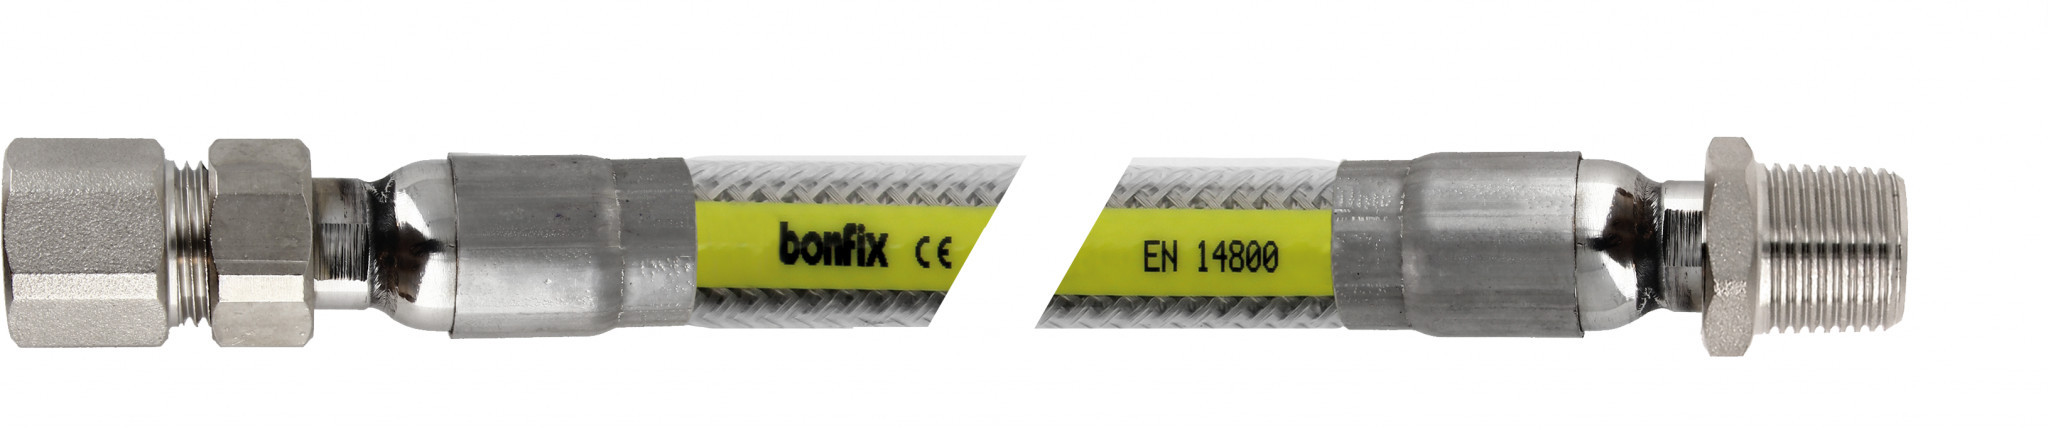 Bonfix Inox gasflexibels voor België Superieure RVS gasslang 75 cm - 1/2 binnendraad x 1/2 buitendraad